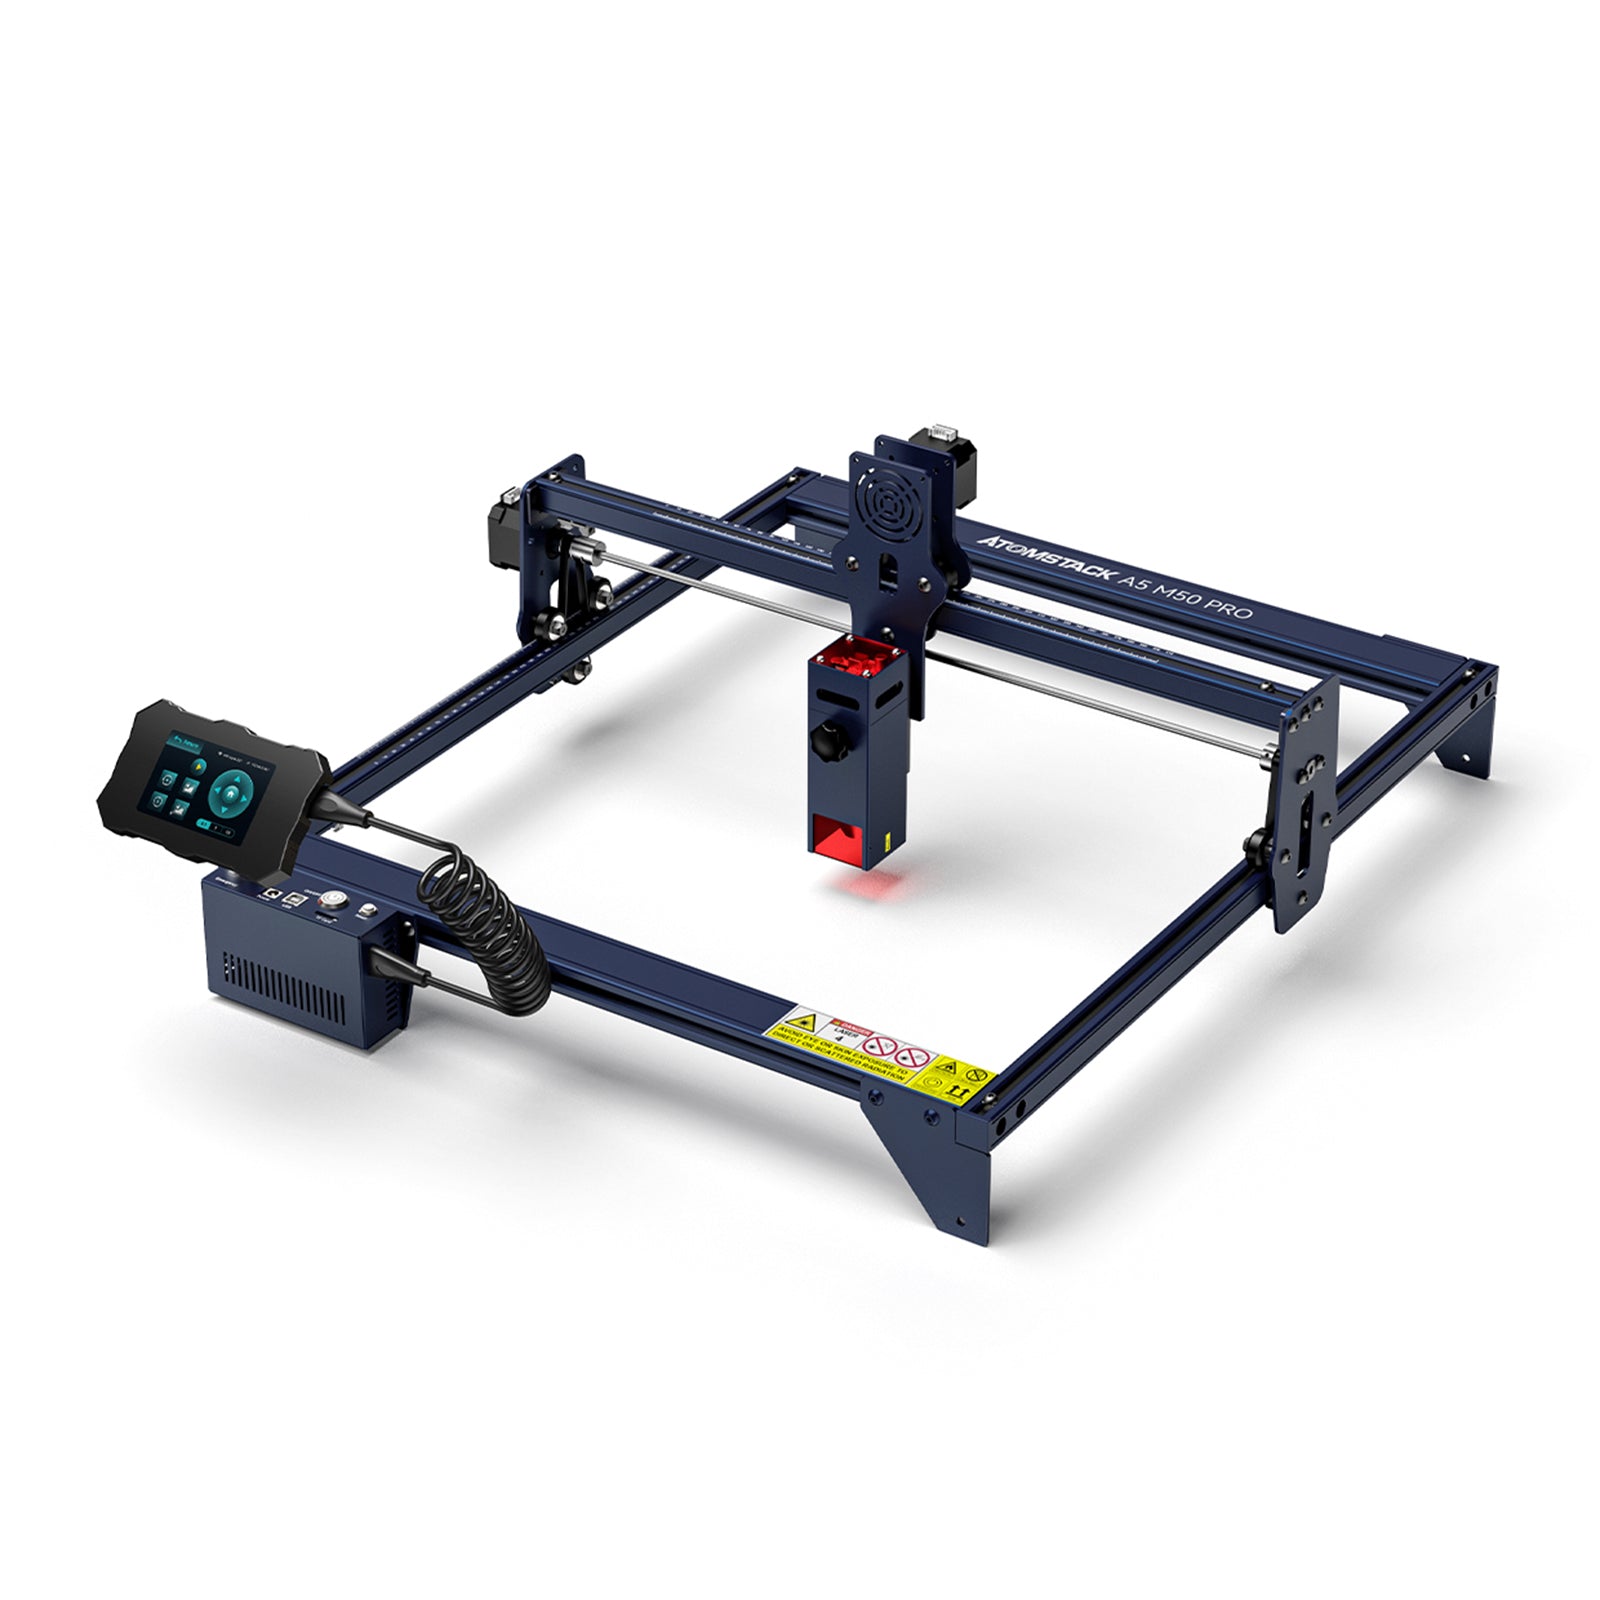 ATOMSTACK A5 M50 PRO graveur Laser 40W Machine de découpe de gravure pour bois métal 410x400mm